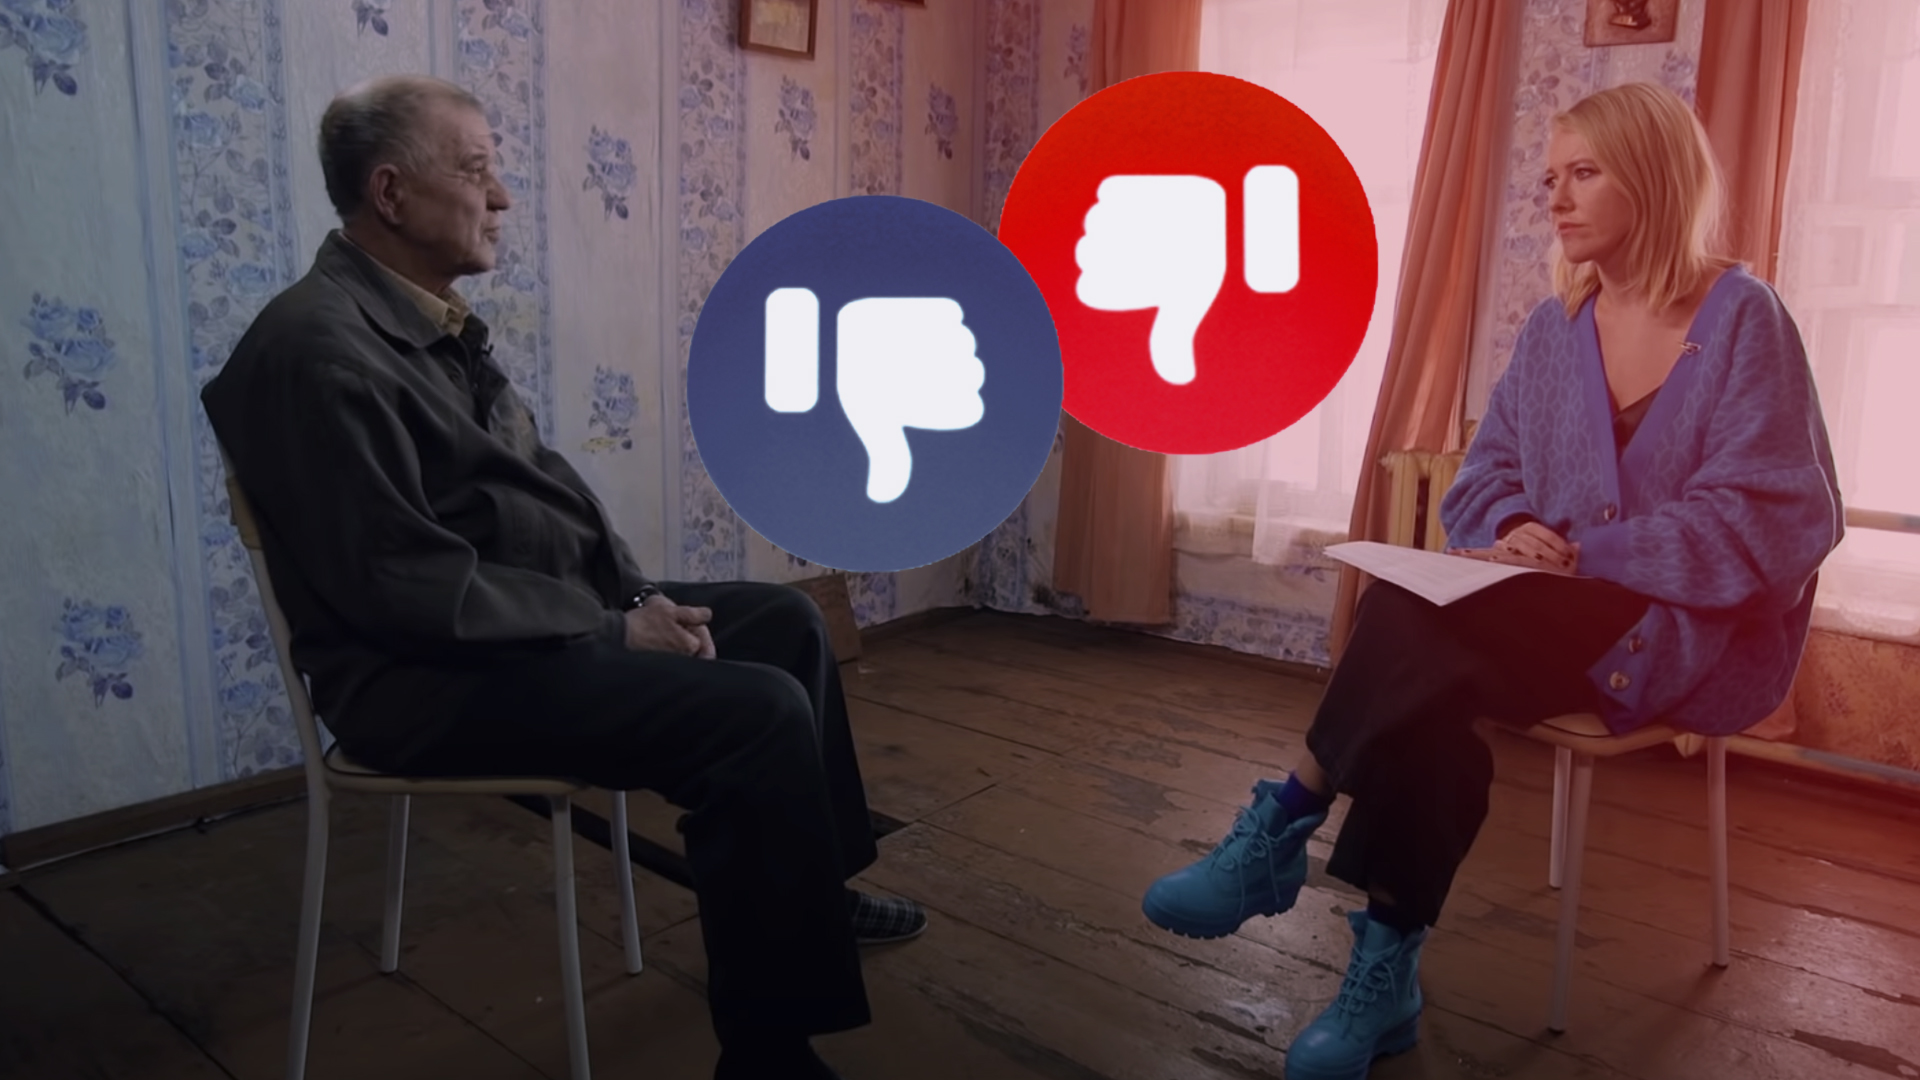 
Народный суд над Собчак: как отреагировали в соцсетях на бенефис маньяка Мохова